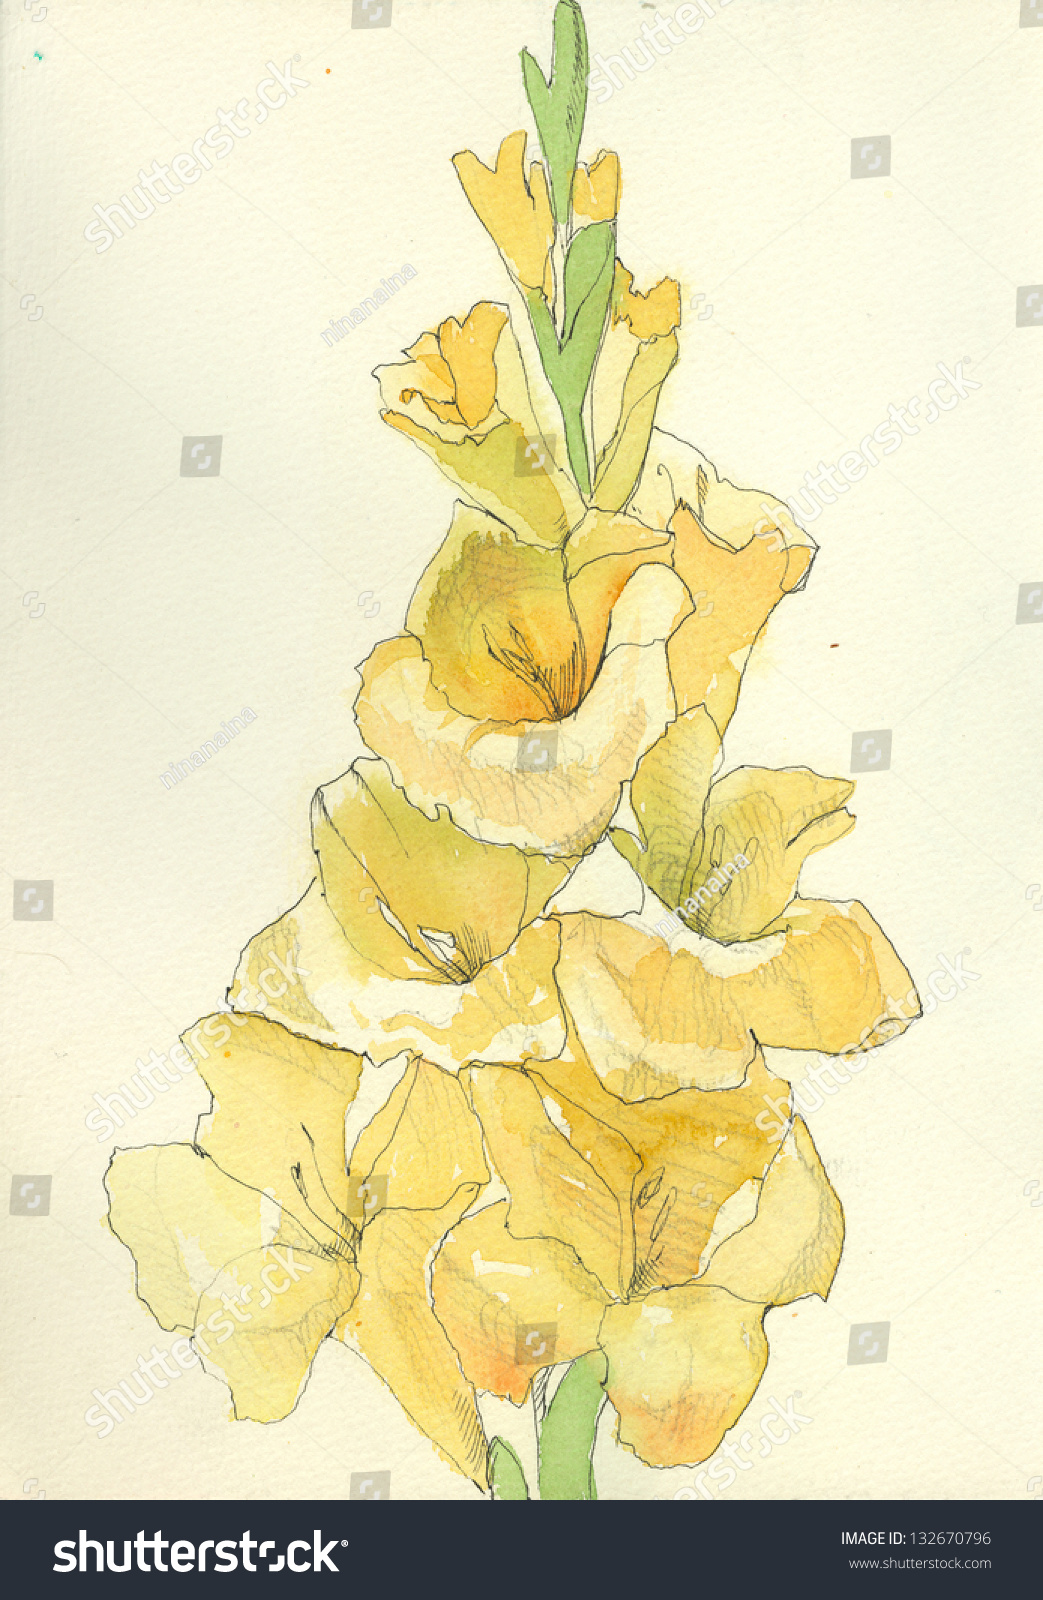 Нарисовать желтые гладиолусы акварелью